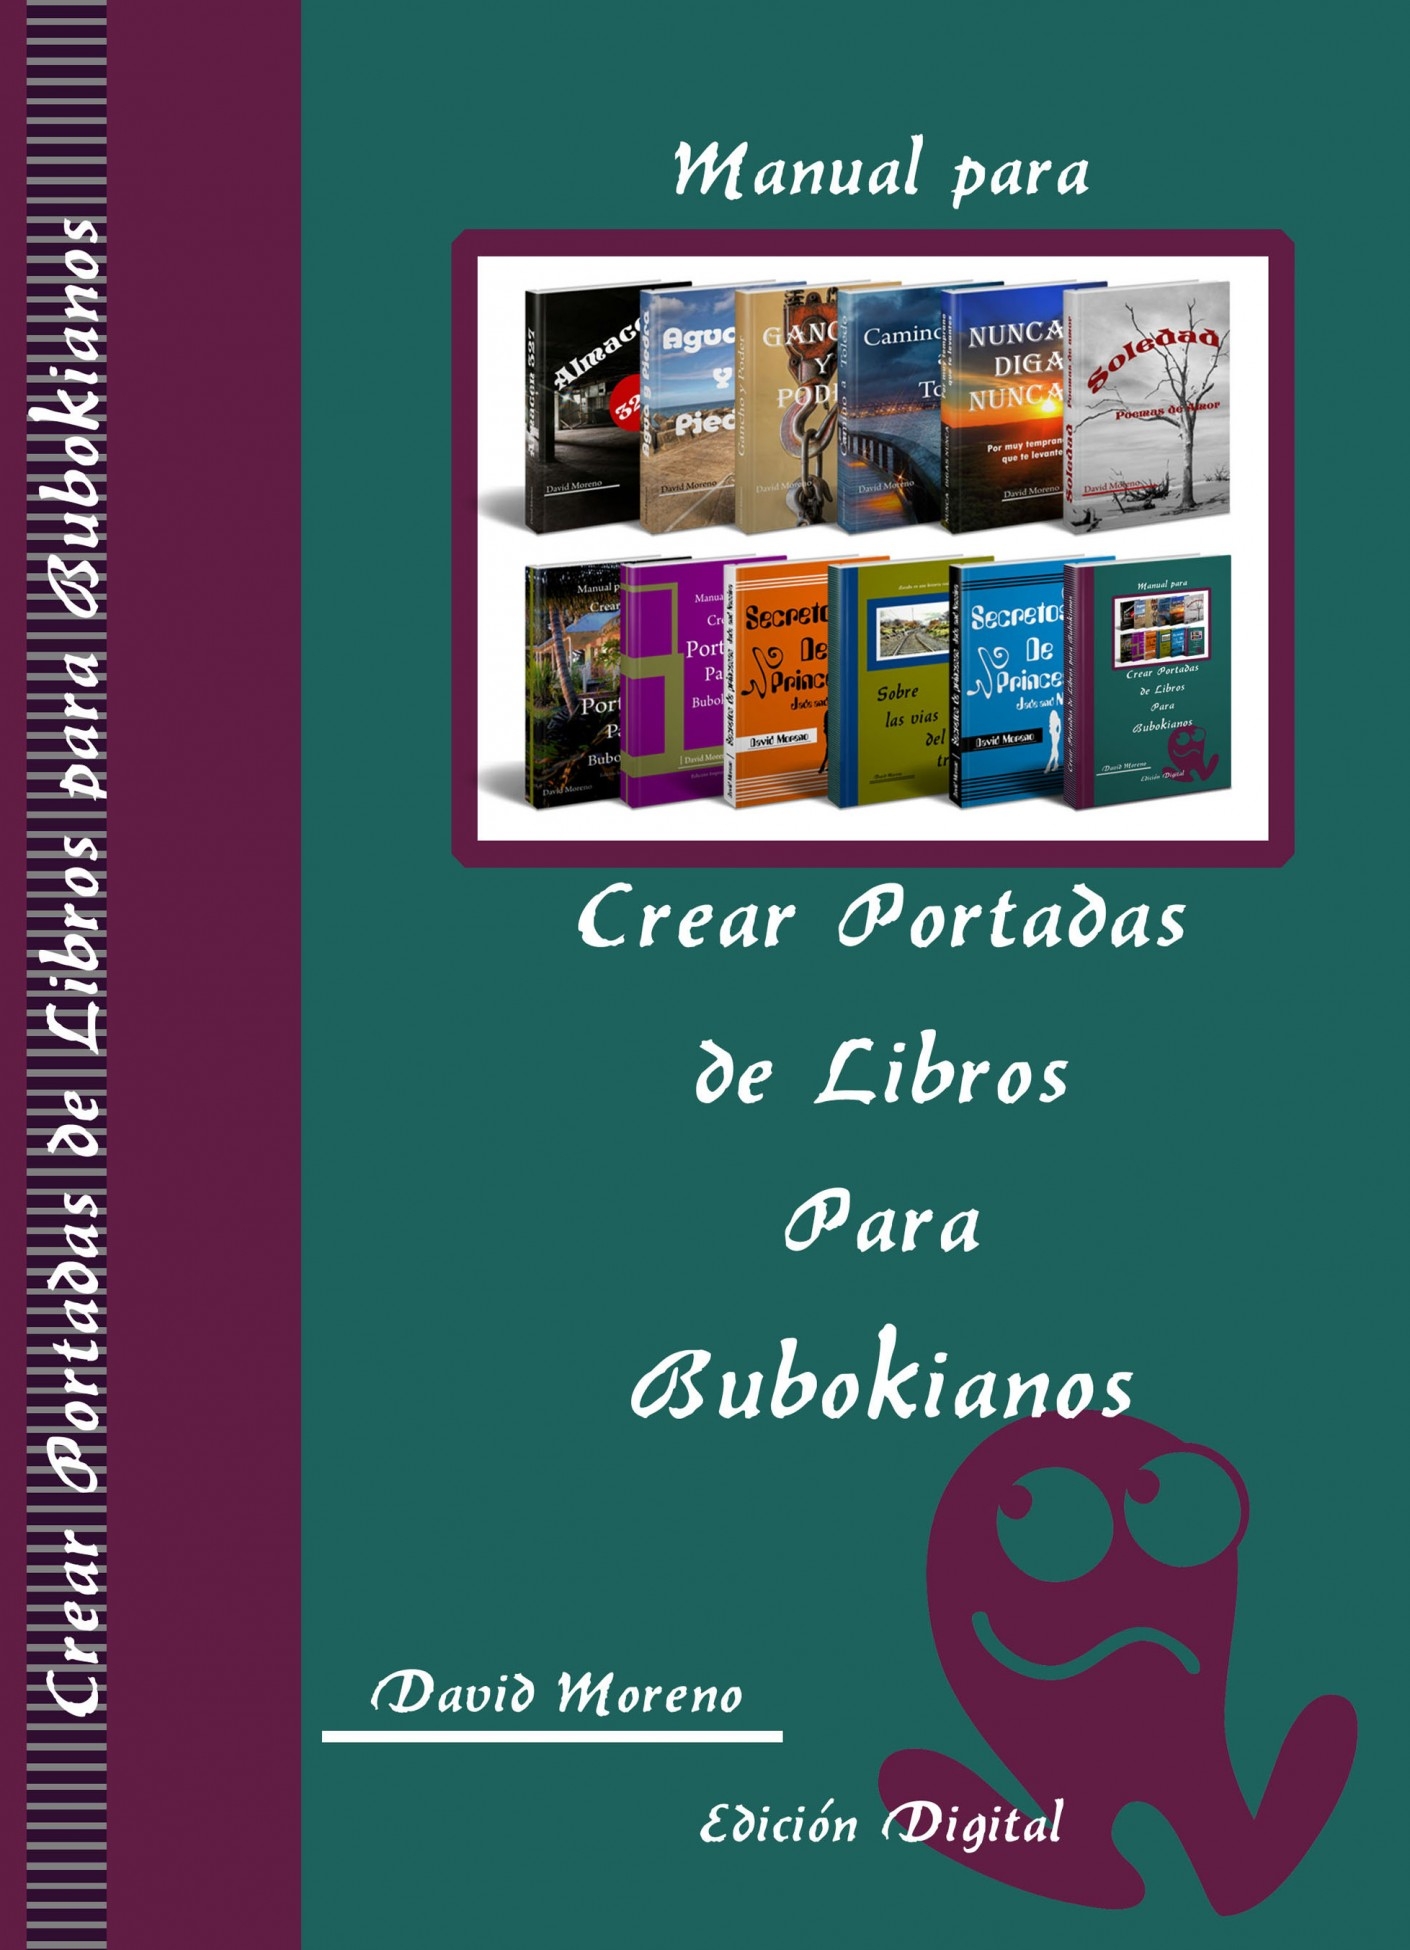 Manual para Crear Portadas de Libros para Bubokianos | David Moreno